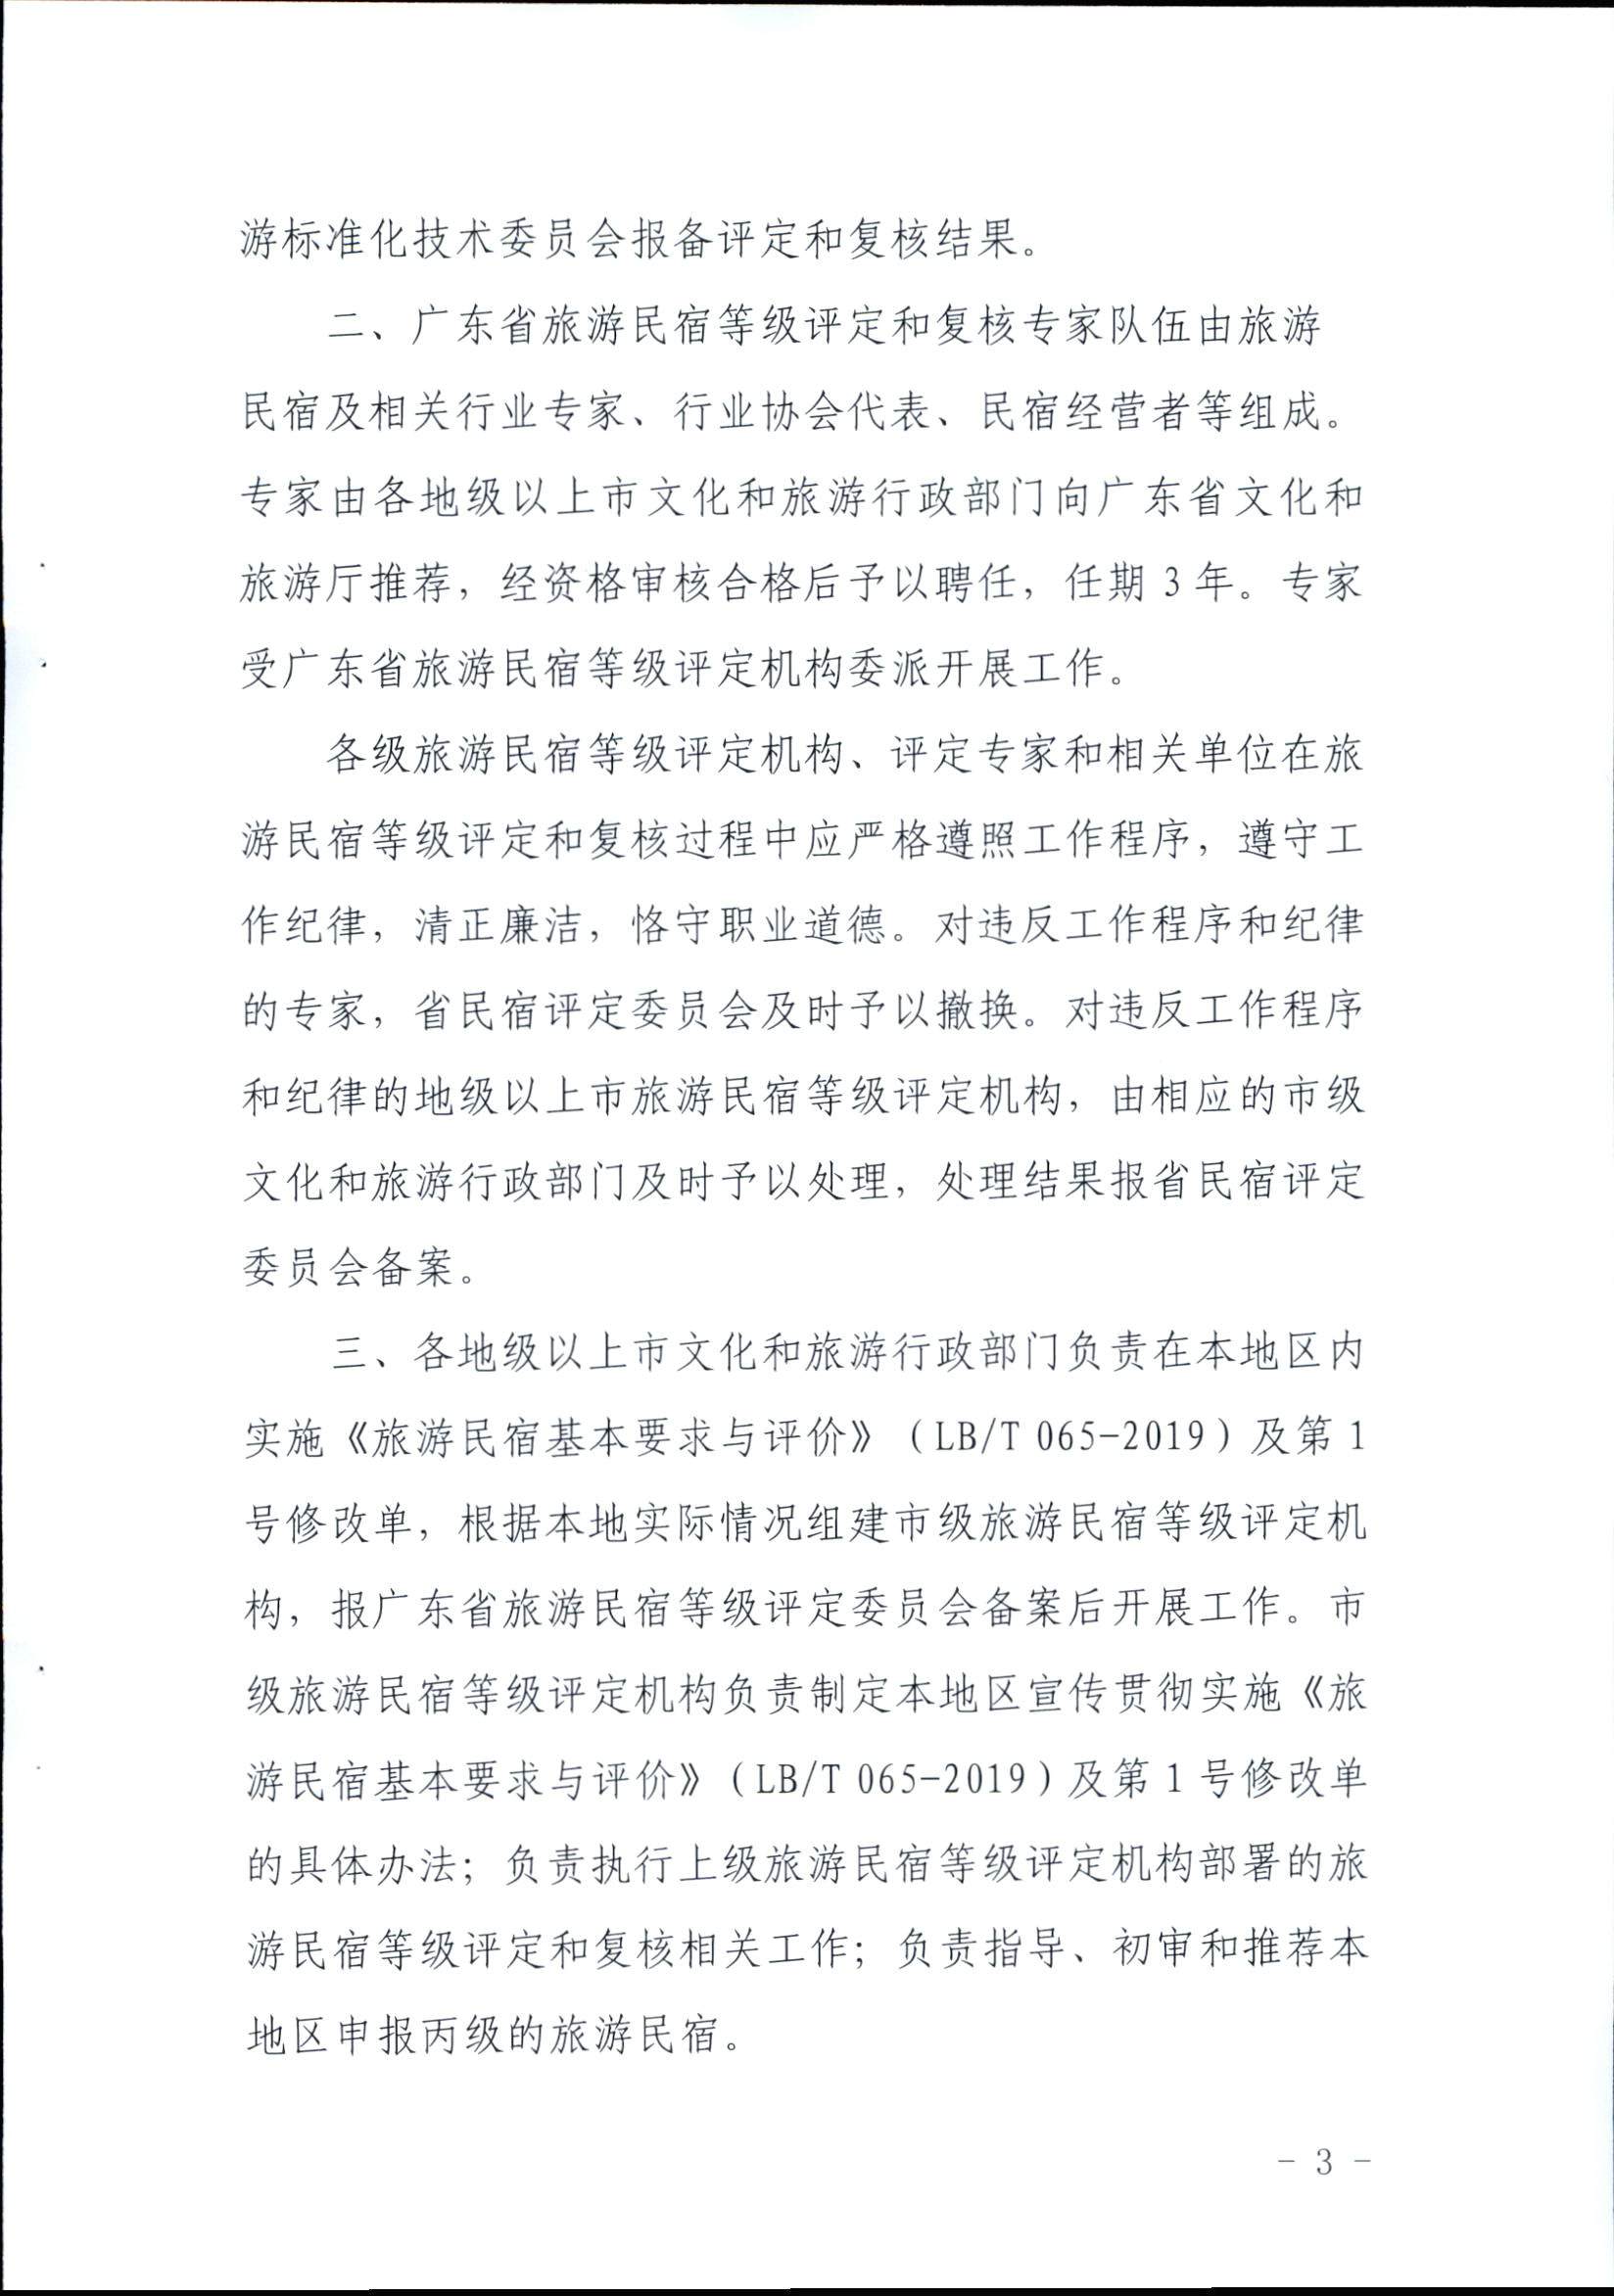 广东省旅游民宿等级评定和复核工作规程_页面_3.jpg